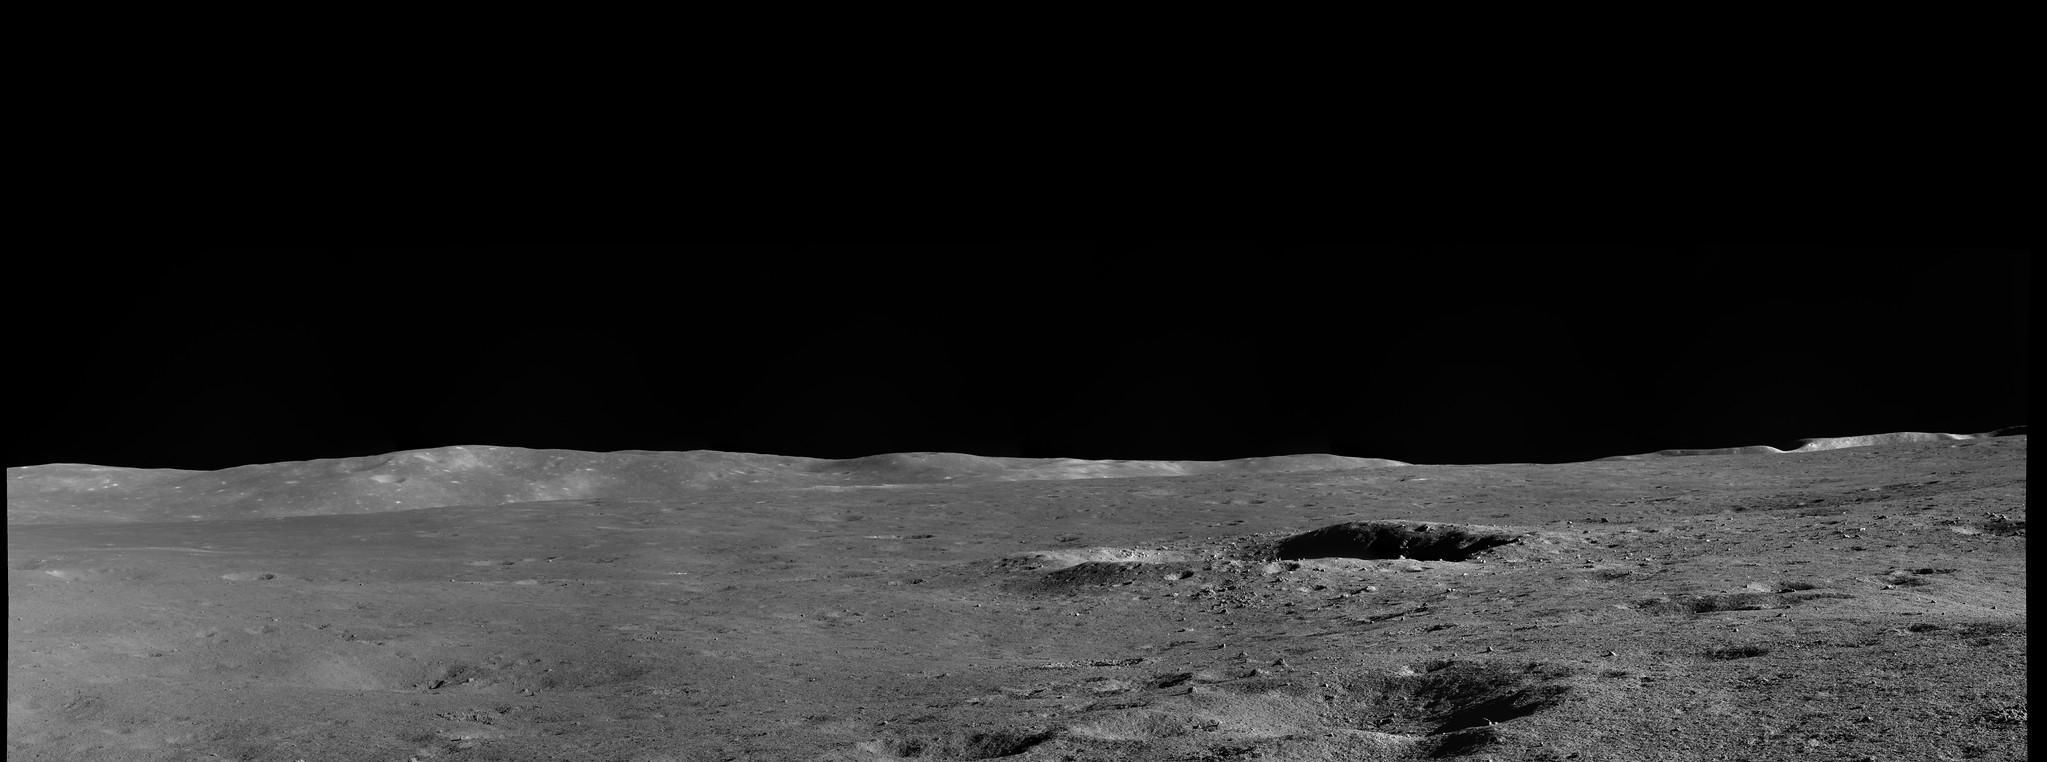 登月1周年,嫦娥四号发回大量图片!外国网友看